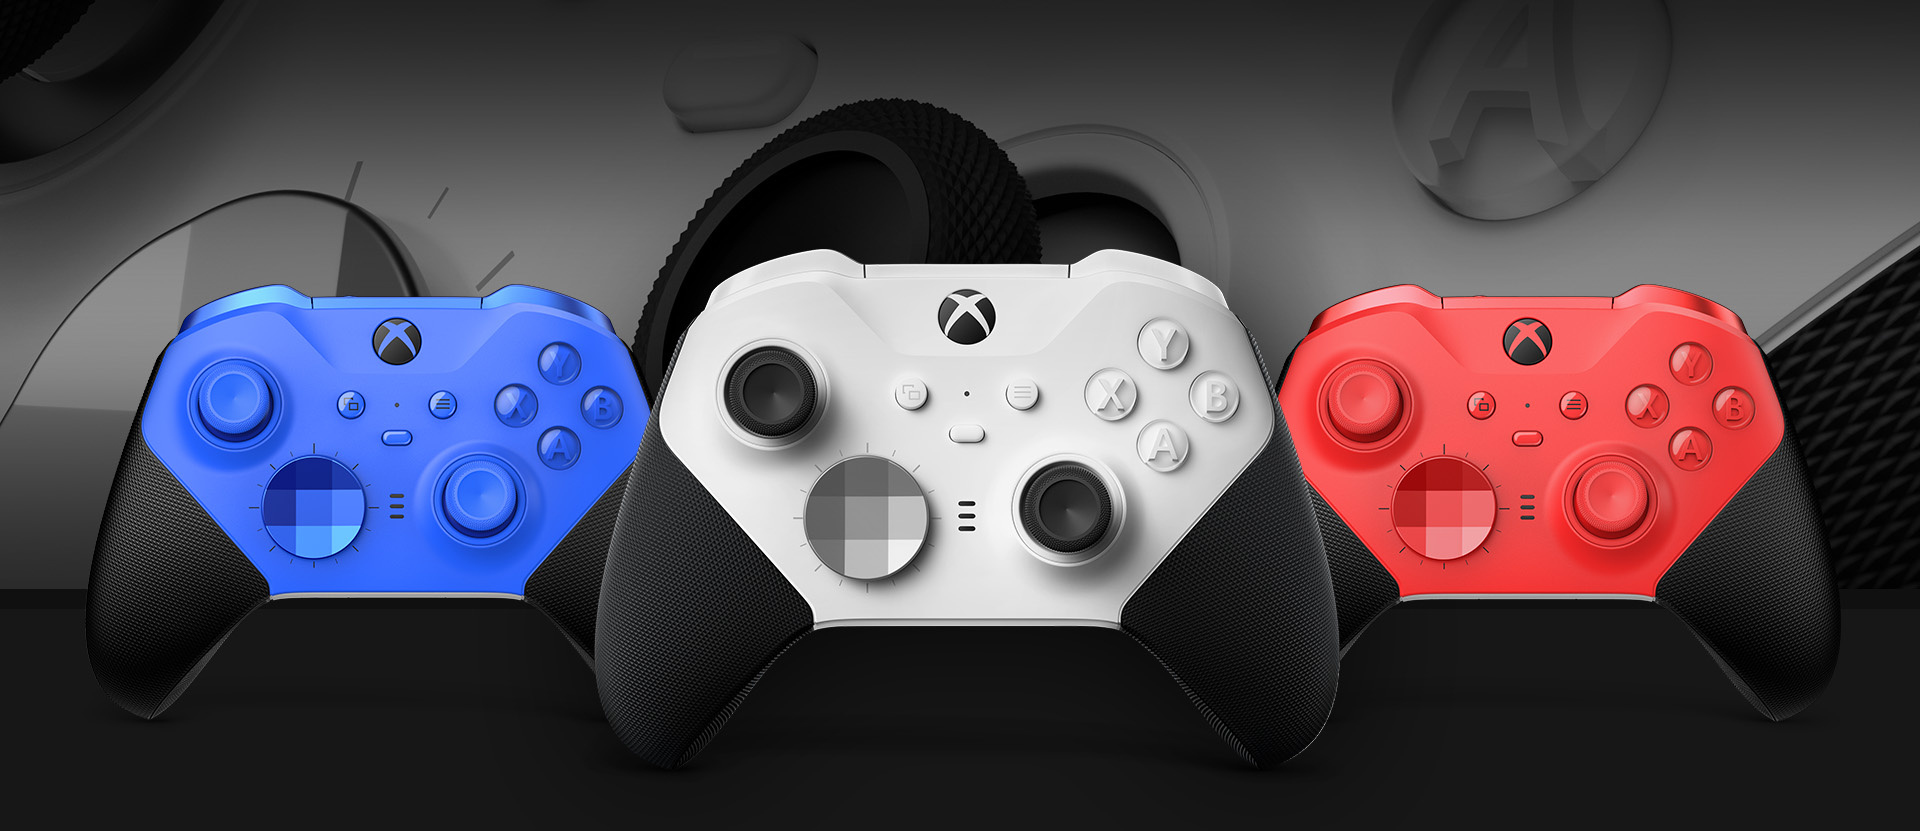 Vooraanzicht van de Xbox Elite draadloze controller Series 2 - Core (wit) met daarnaast andere kleuropties. Een close-up van de duimsticks van de controller en getextureerde greep wordt op de achtergrond getoond.